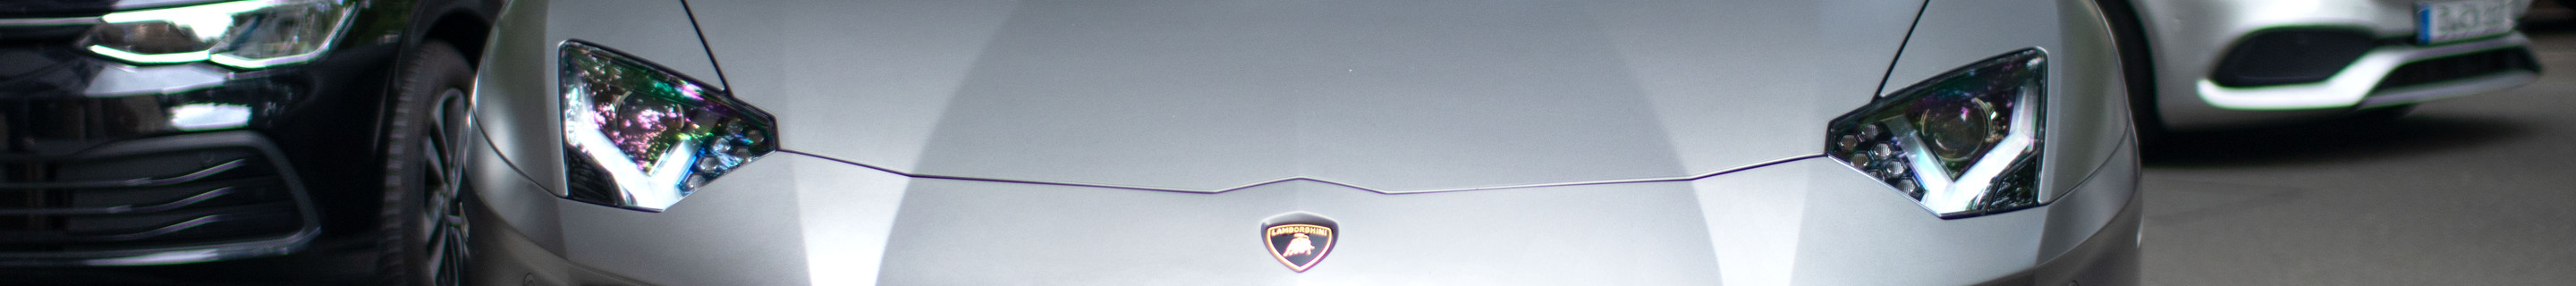 Lamborghini Aventador LP700-4 Roadster Pirelli Edition